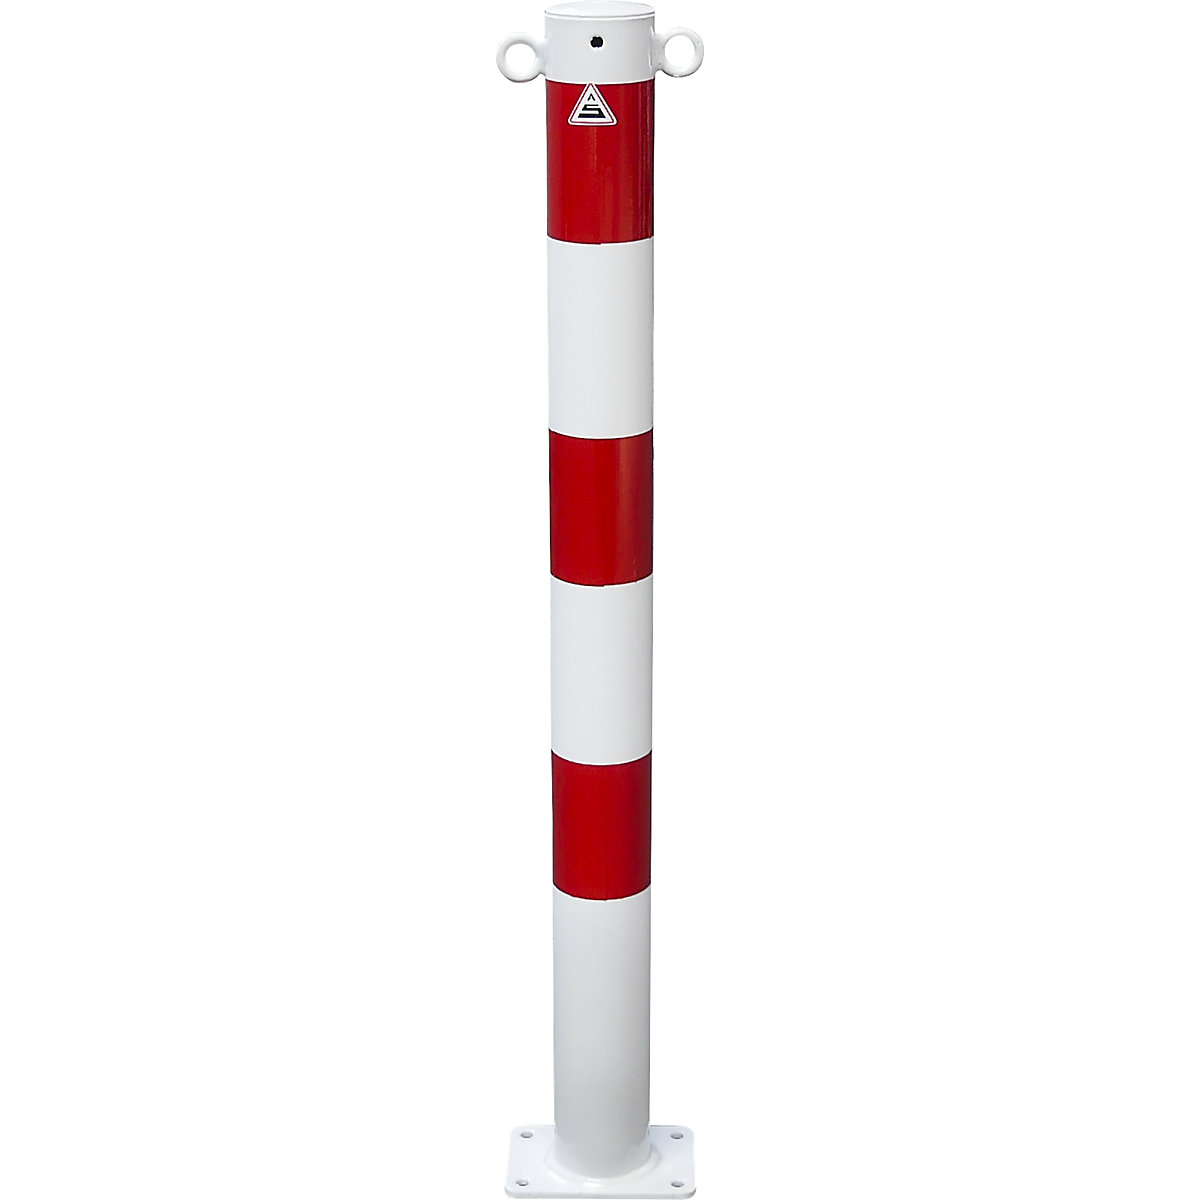 Zaporni stebrič, Ø 76 mm, bel / rdeč, pritrditev z vložki, z 2 ušescema-2